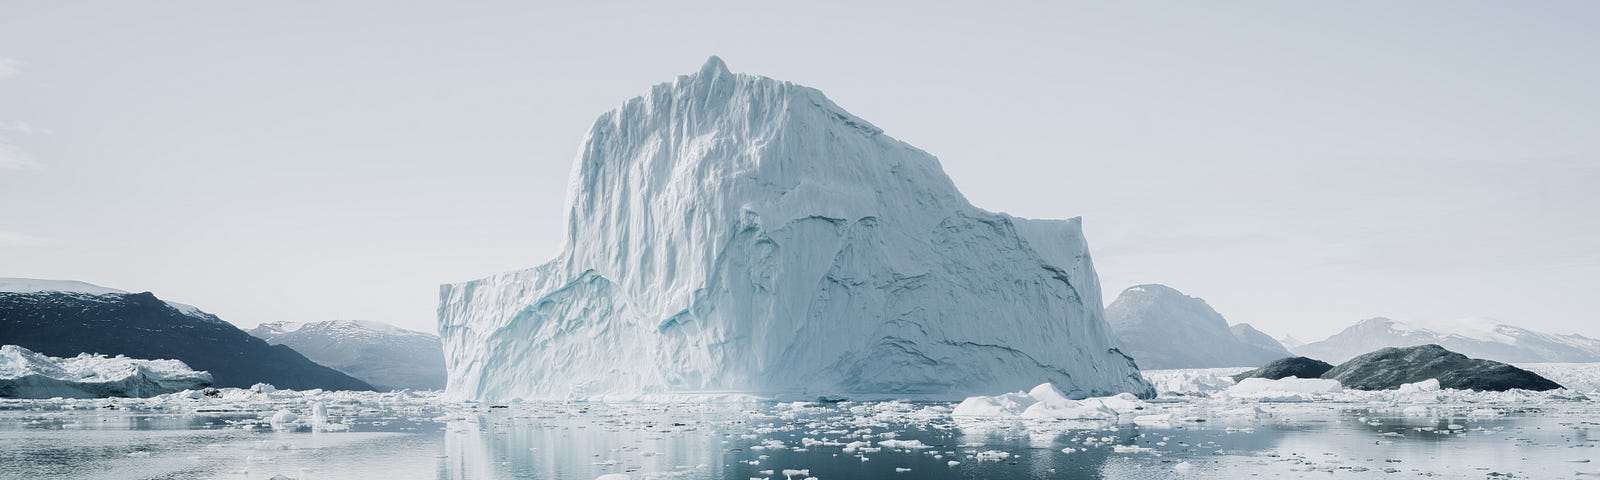 Foto de um iceberg em meio ao oceano